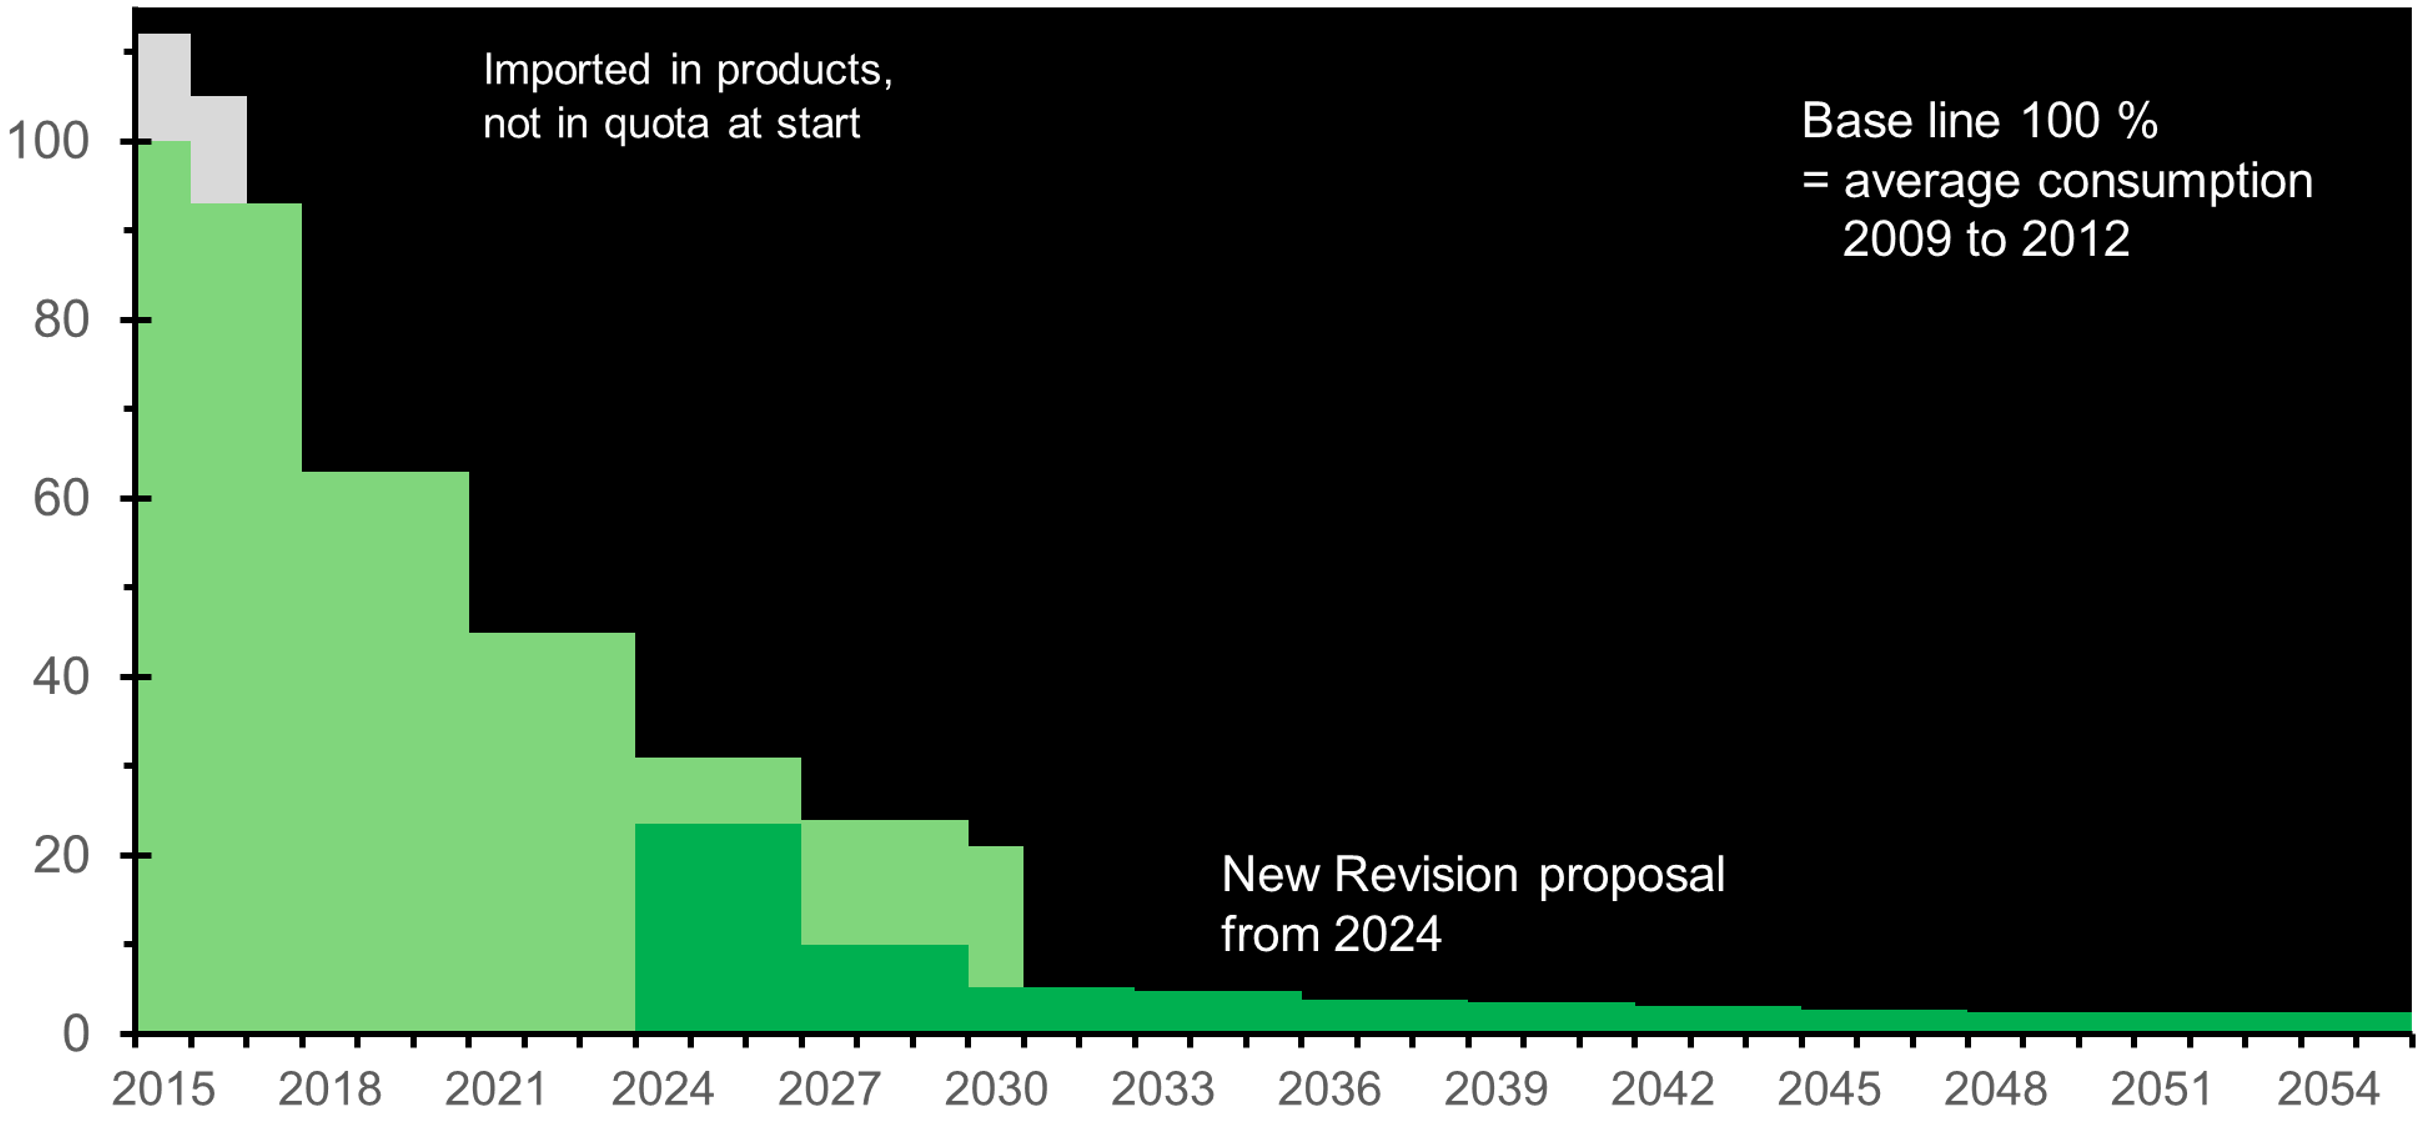 Vergleich des Phase-Down-Stufen in % der Verordnung 517/2014 (in hellgrün), anfangend bei 100% im Jahr 2015, und dem Phase-Down des Entwurfes (in dunkelgrün) ab 2024. In hellgrau: Mengen in importierten Produkten, die in der Grundmenge nicht erfasst waren.